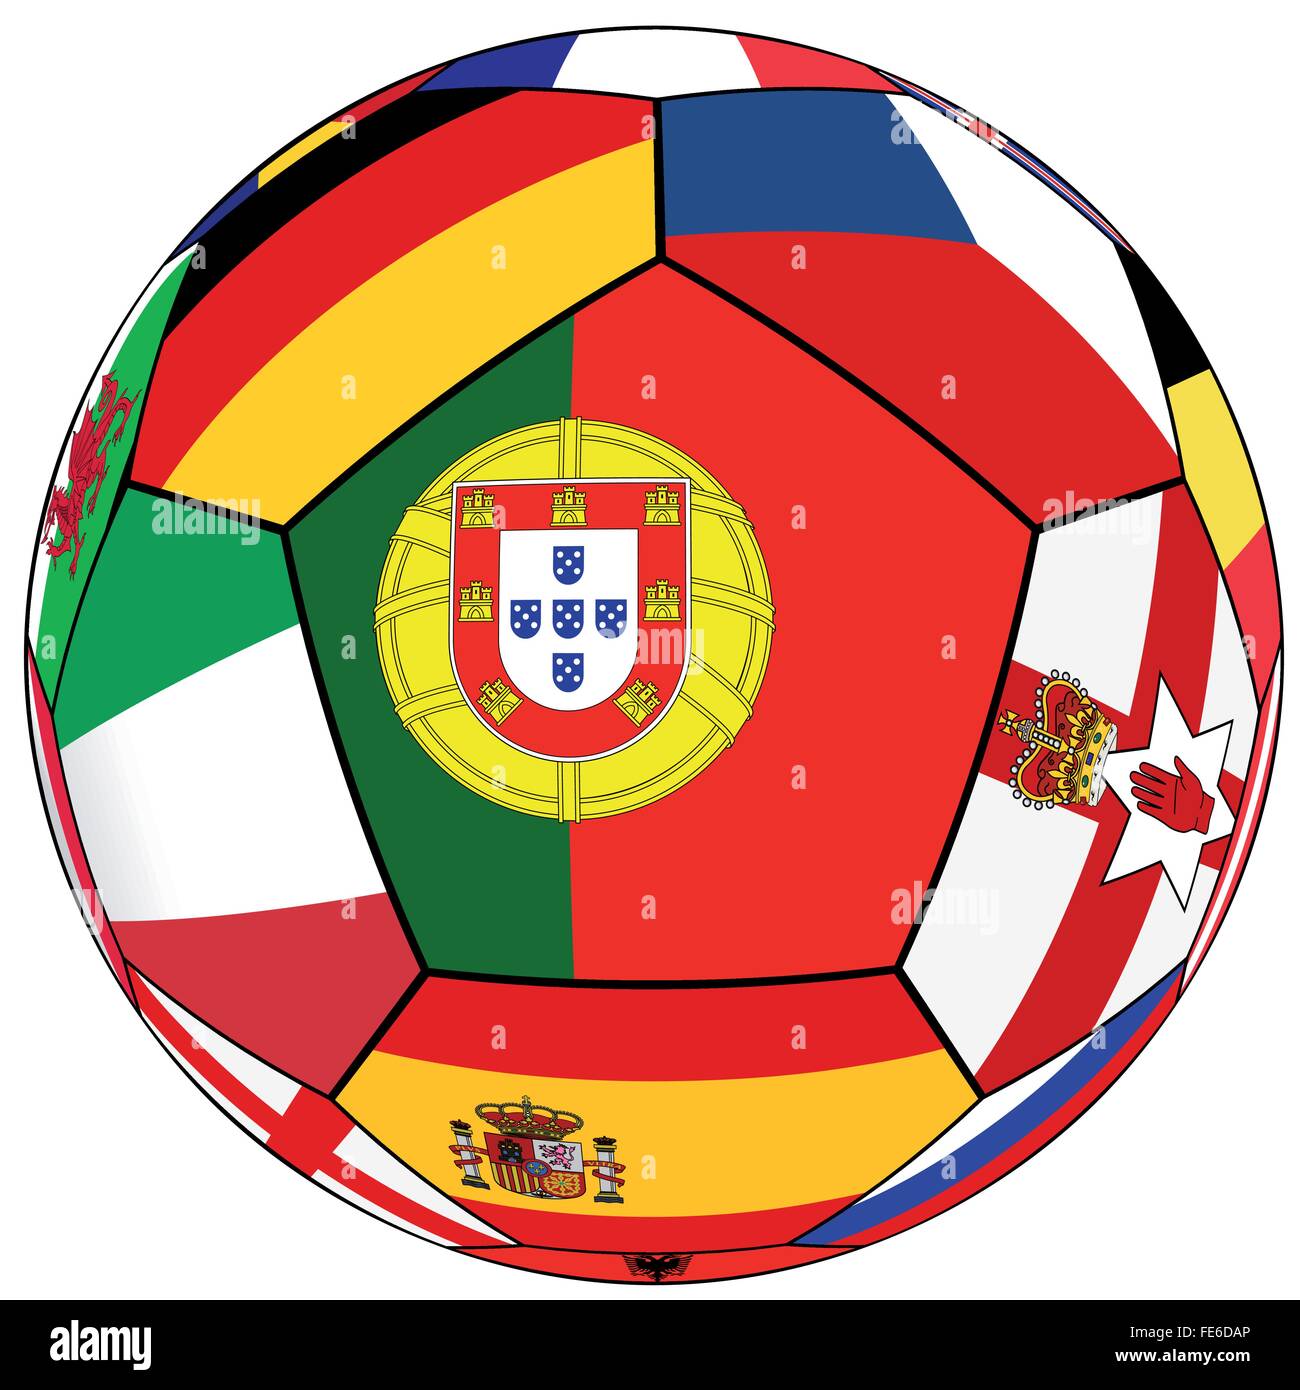 Ballon de soccer sur un fond blanc avec des drapeaux des pays européens - pavillon du Portugal dans le centre Illustration de Vecteur